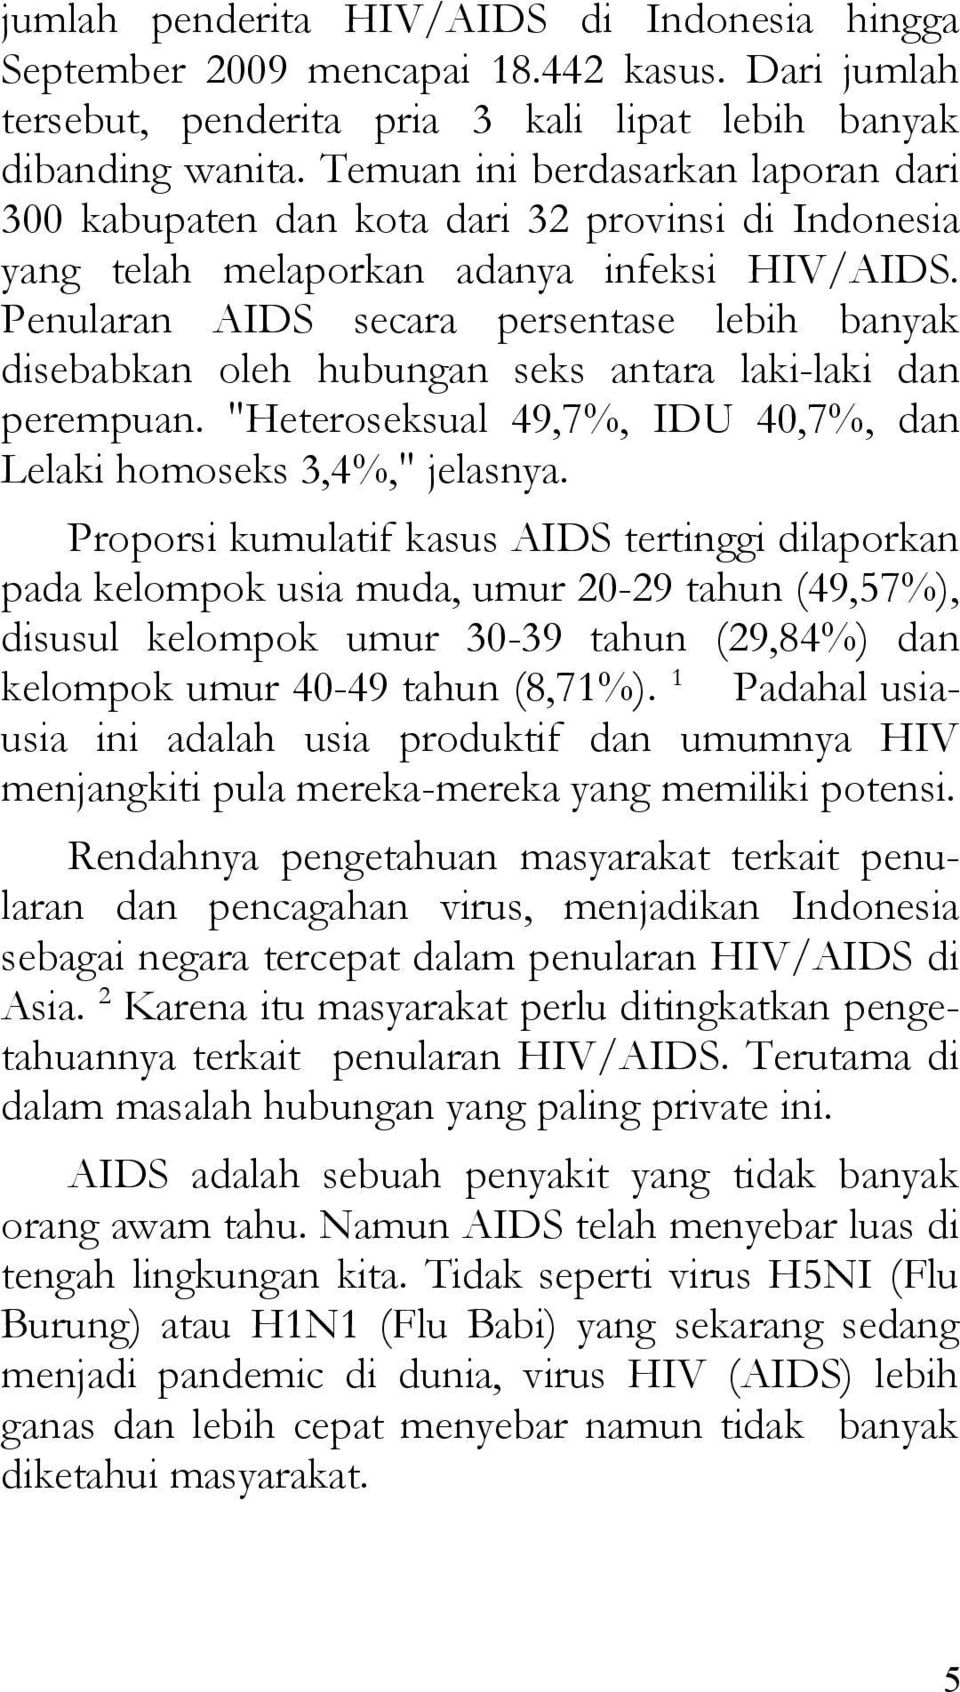 Penularan AIDS secara persentase lebih banyak disebabkan oleh hubungan seks antara laki-laki dan perempuan. "Heteroseksual 49,7%, IDU 40,7%, dan Lelaki homoseks 3,4%," jelasnya.